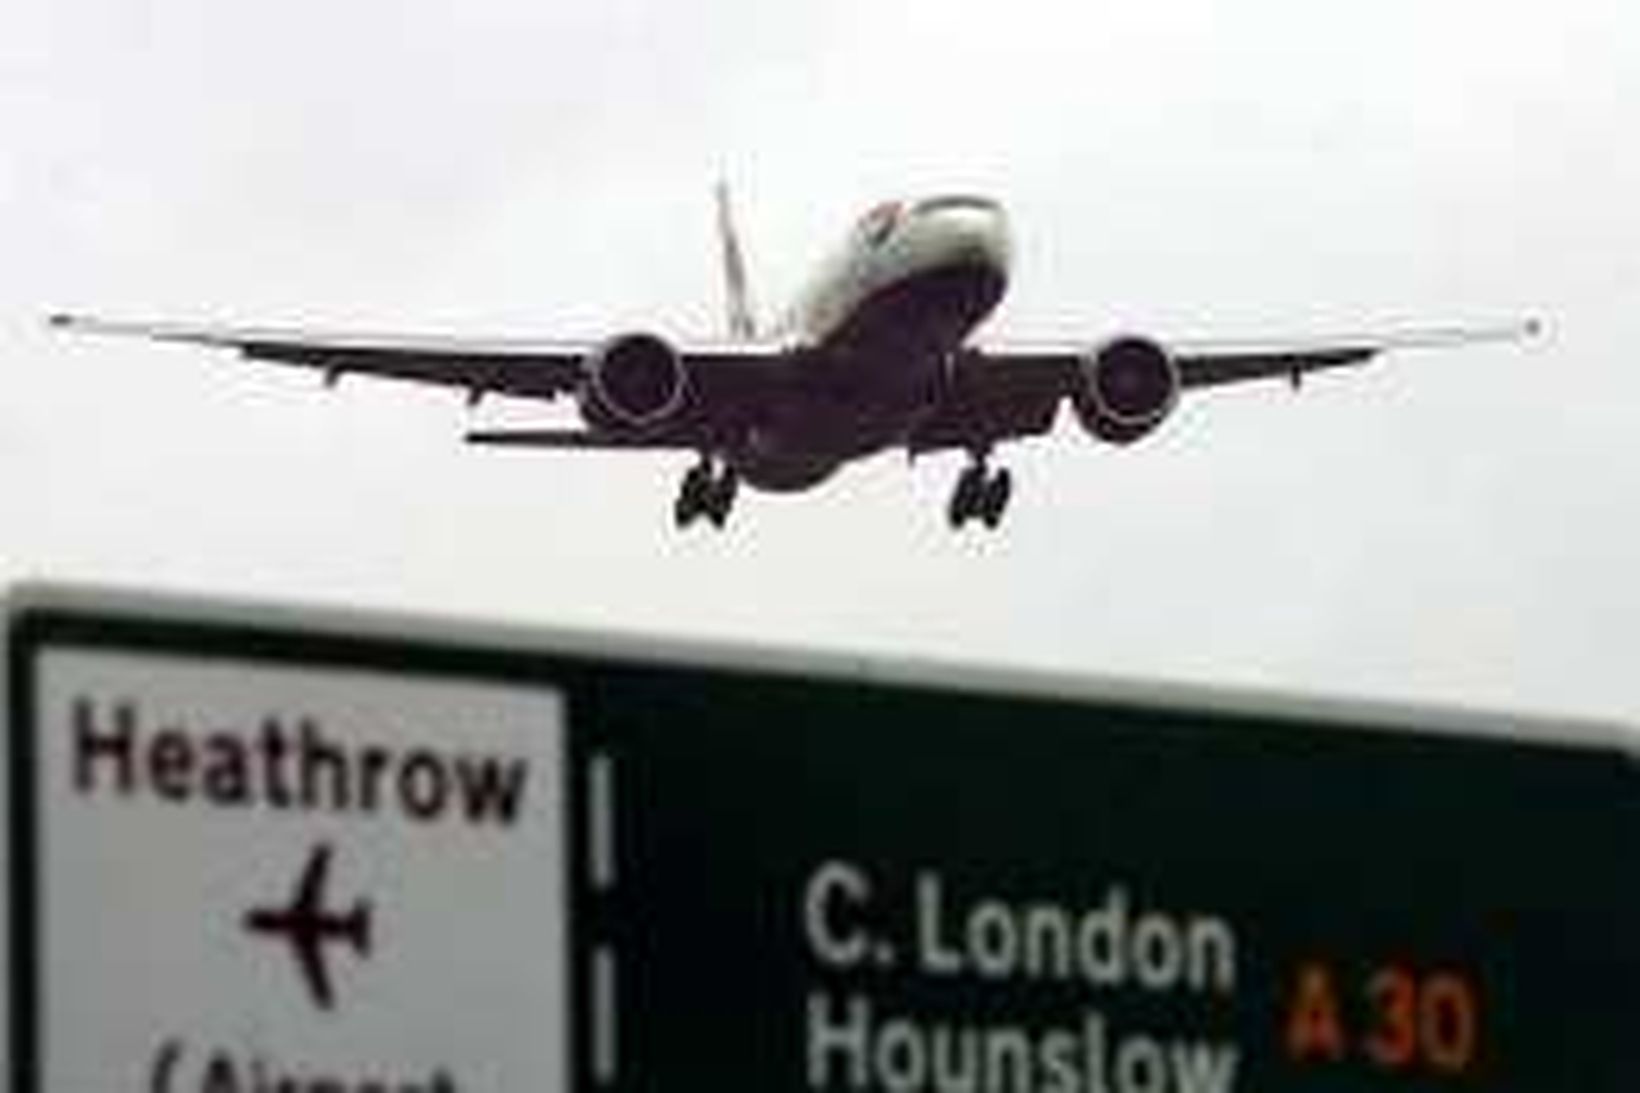 68 milljónir farþega fara um Heathrow flugvöll árlega, en völlurinn …